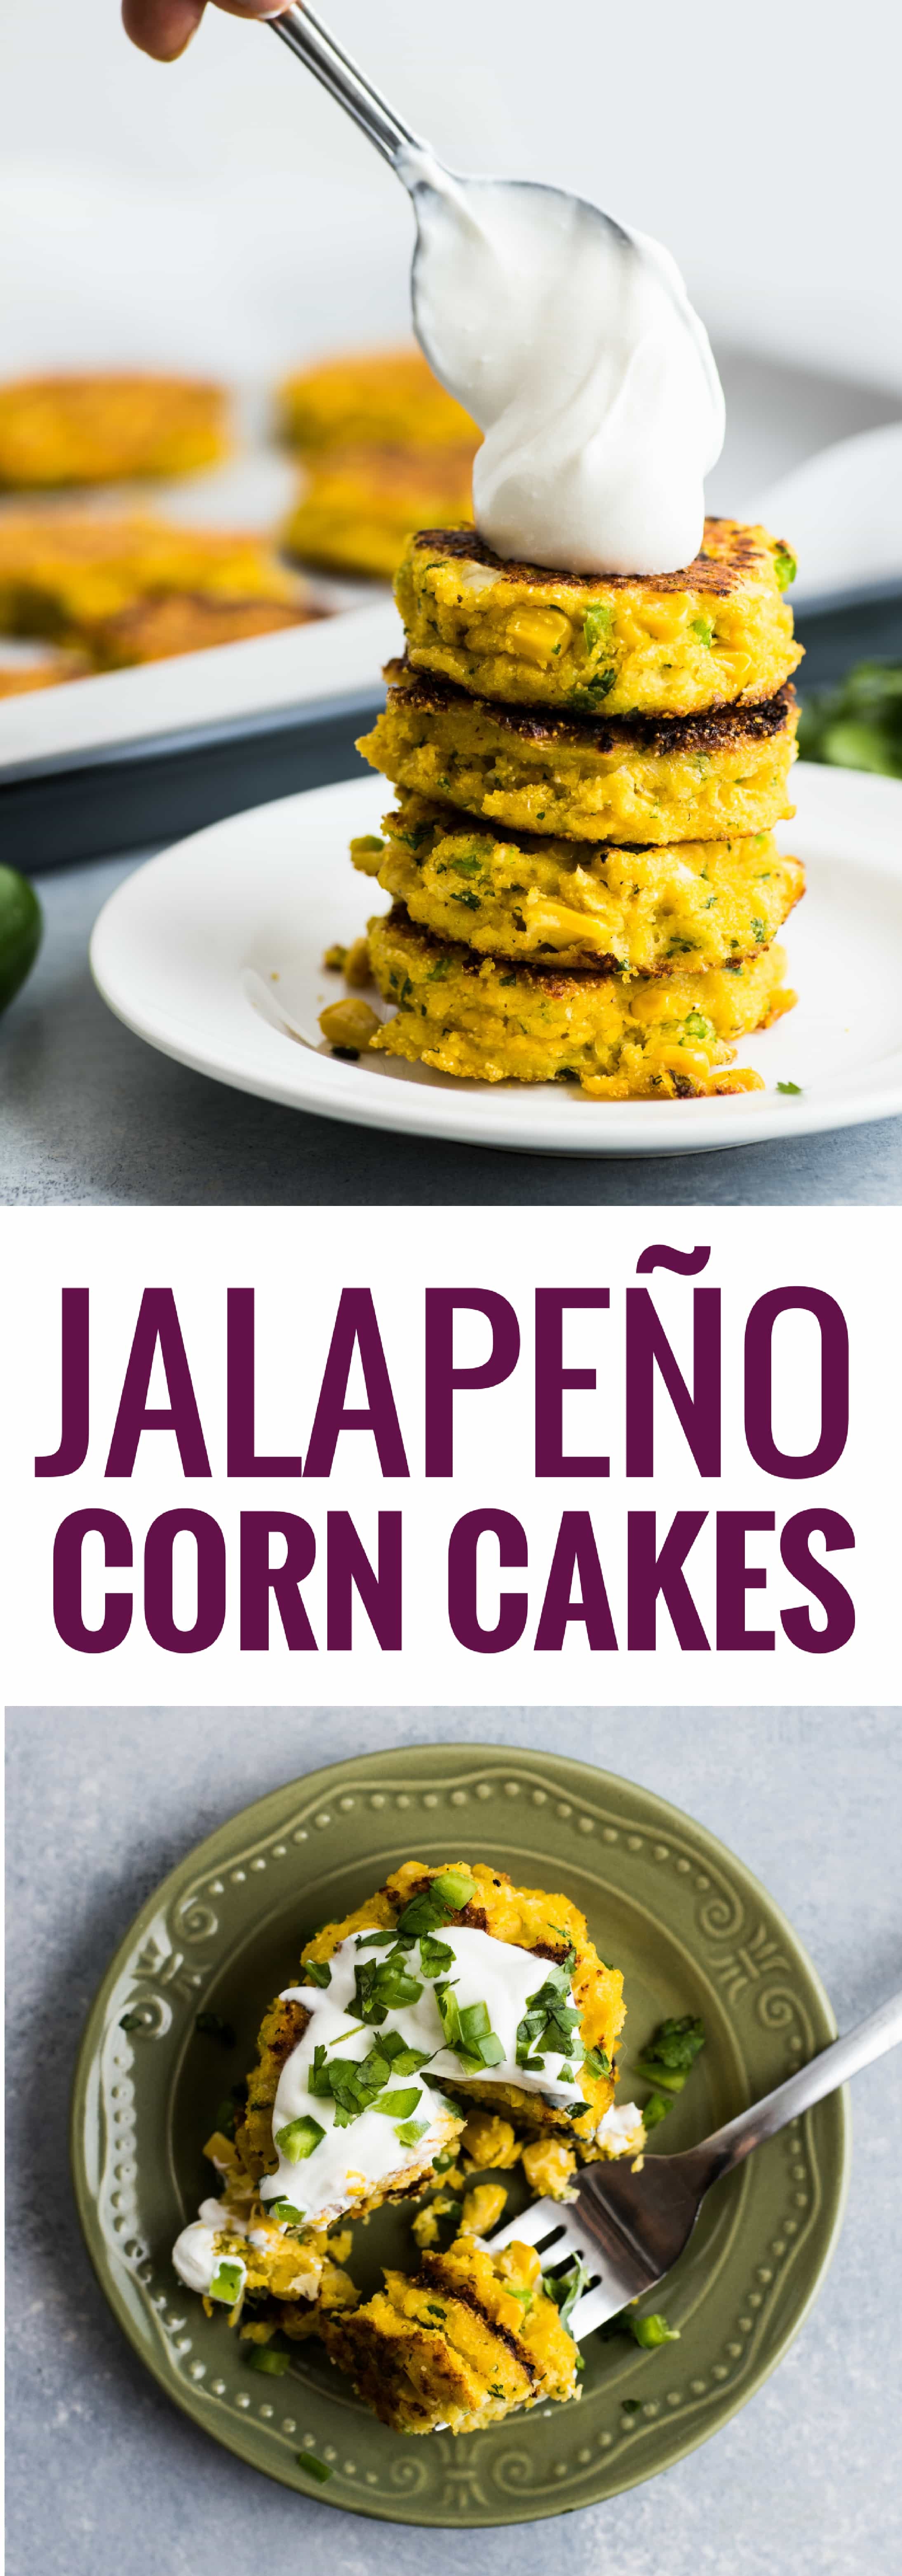 Easy Jalapeno Corn Cakes - Isabel Eats